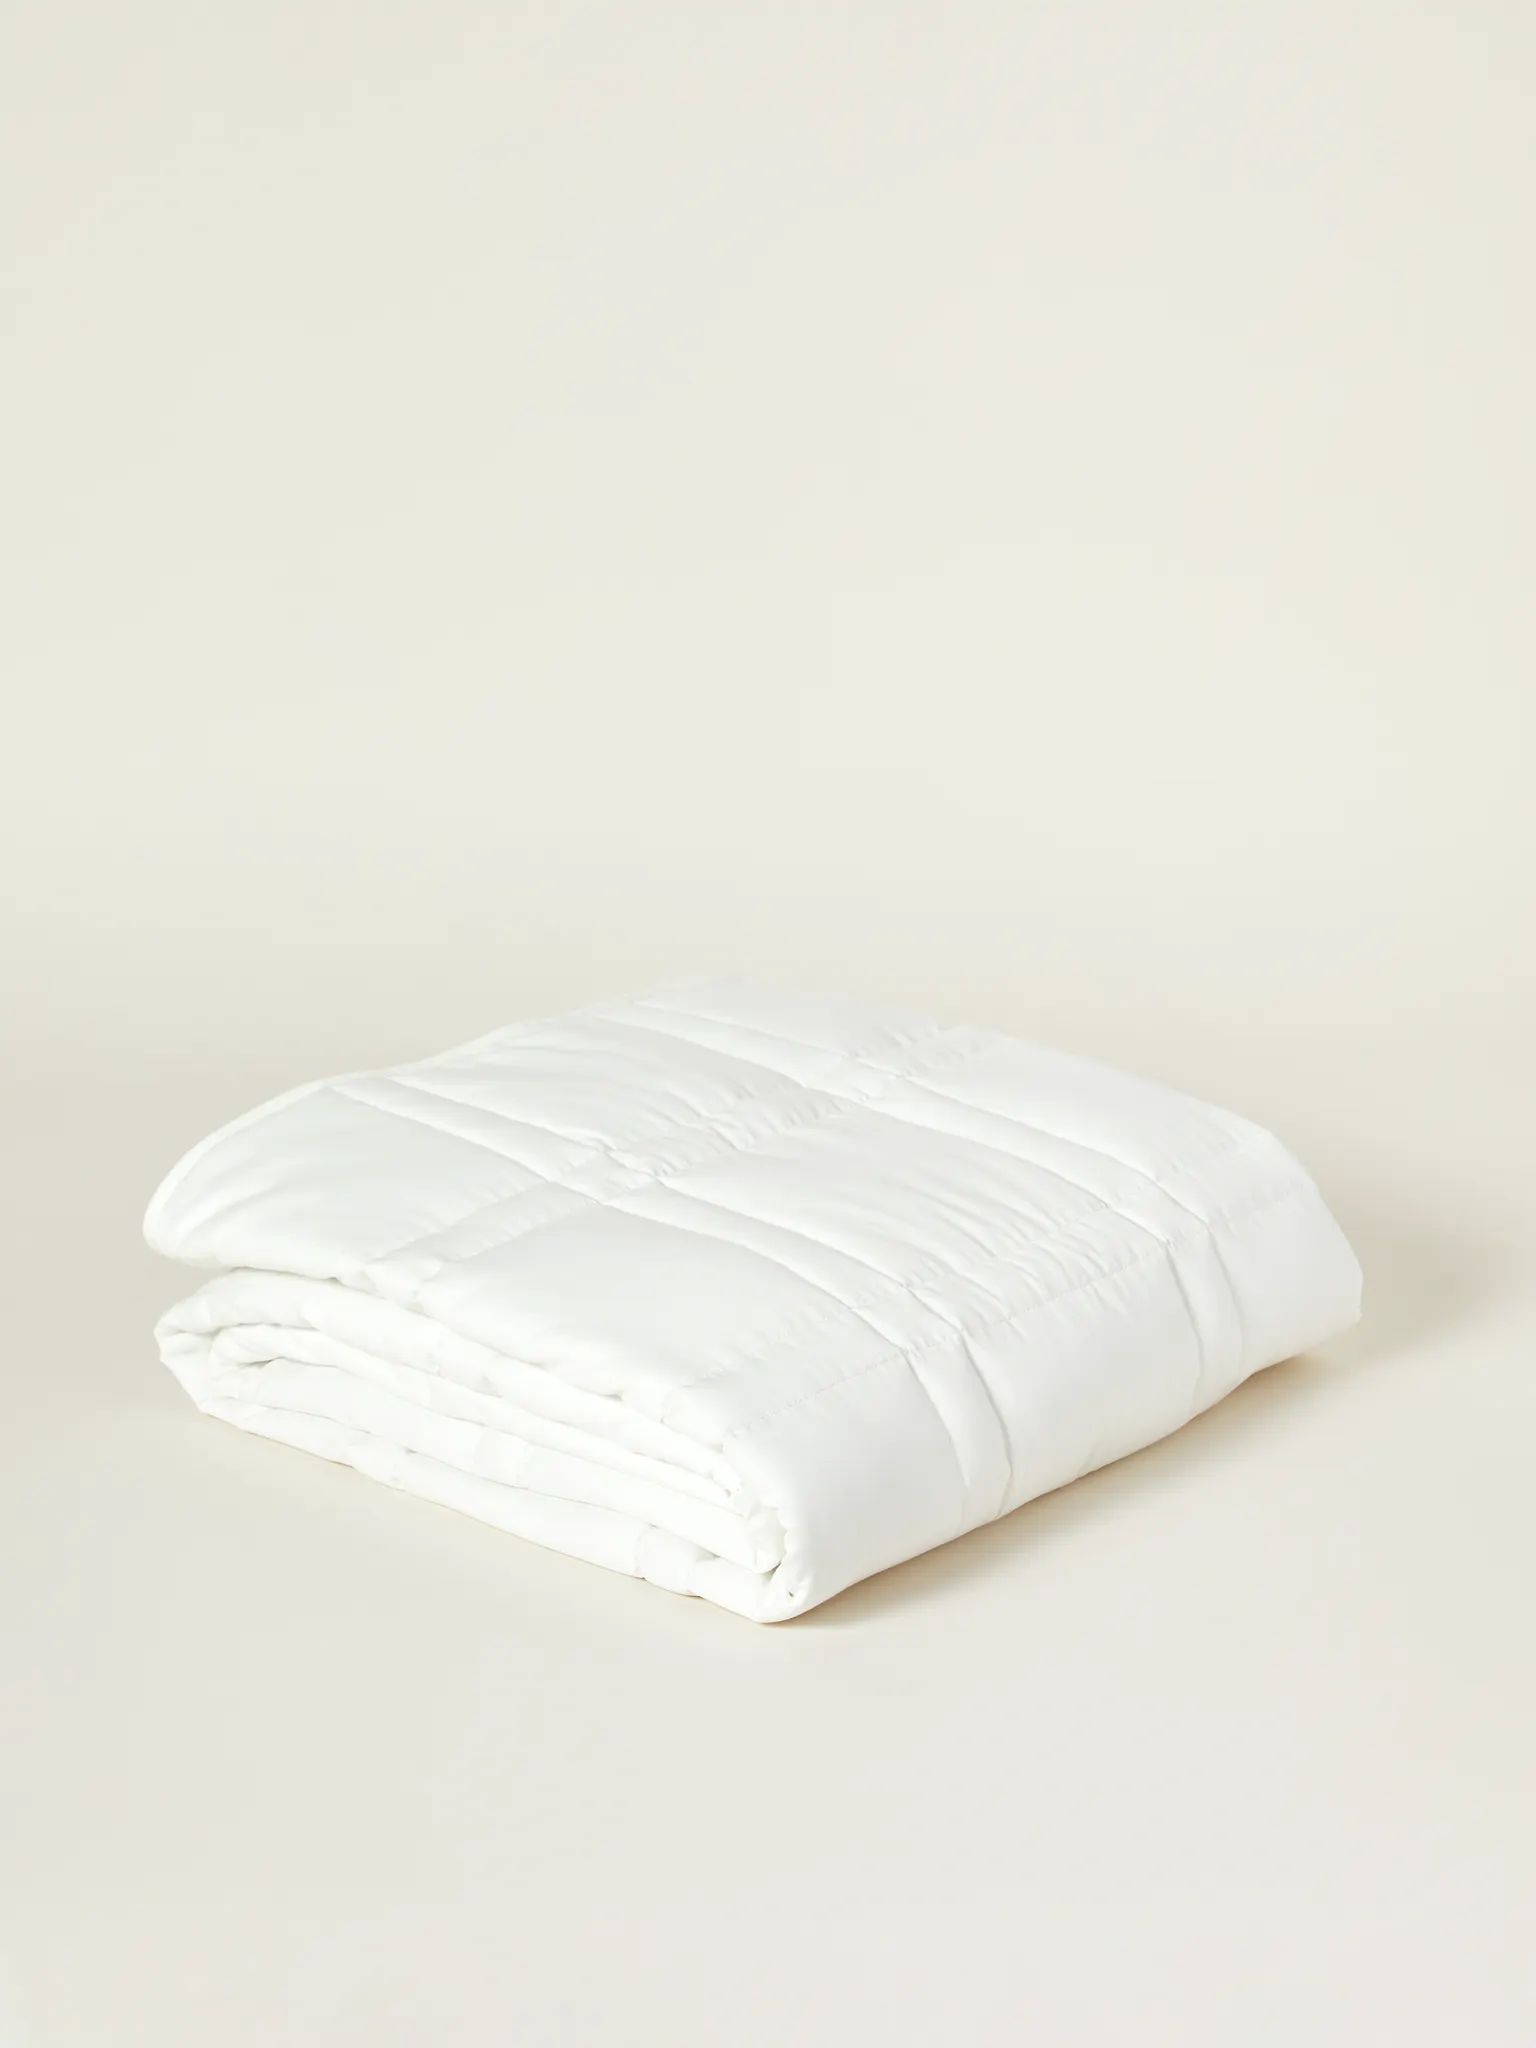 12 lb Weighted Cotton Blanket | Verishop